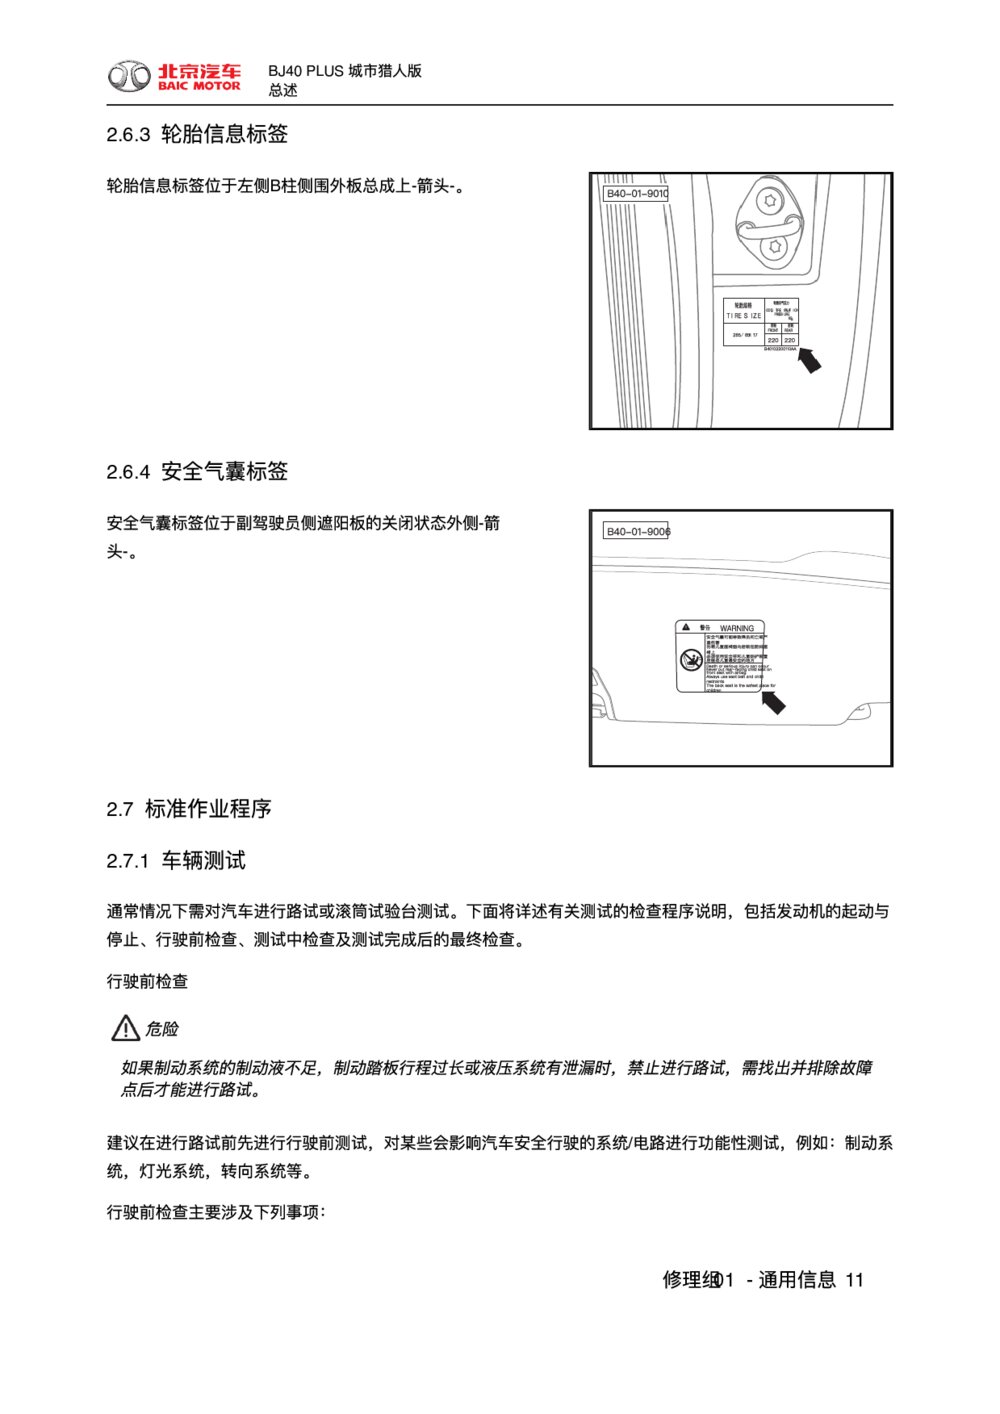 2018款北京BJ40 PLUS城市猎人版标准作业程序1